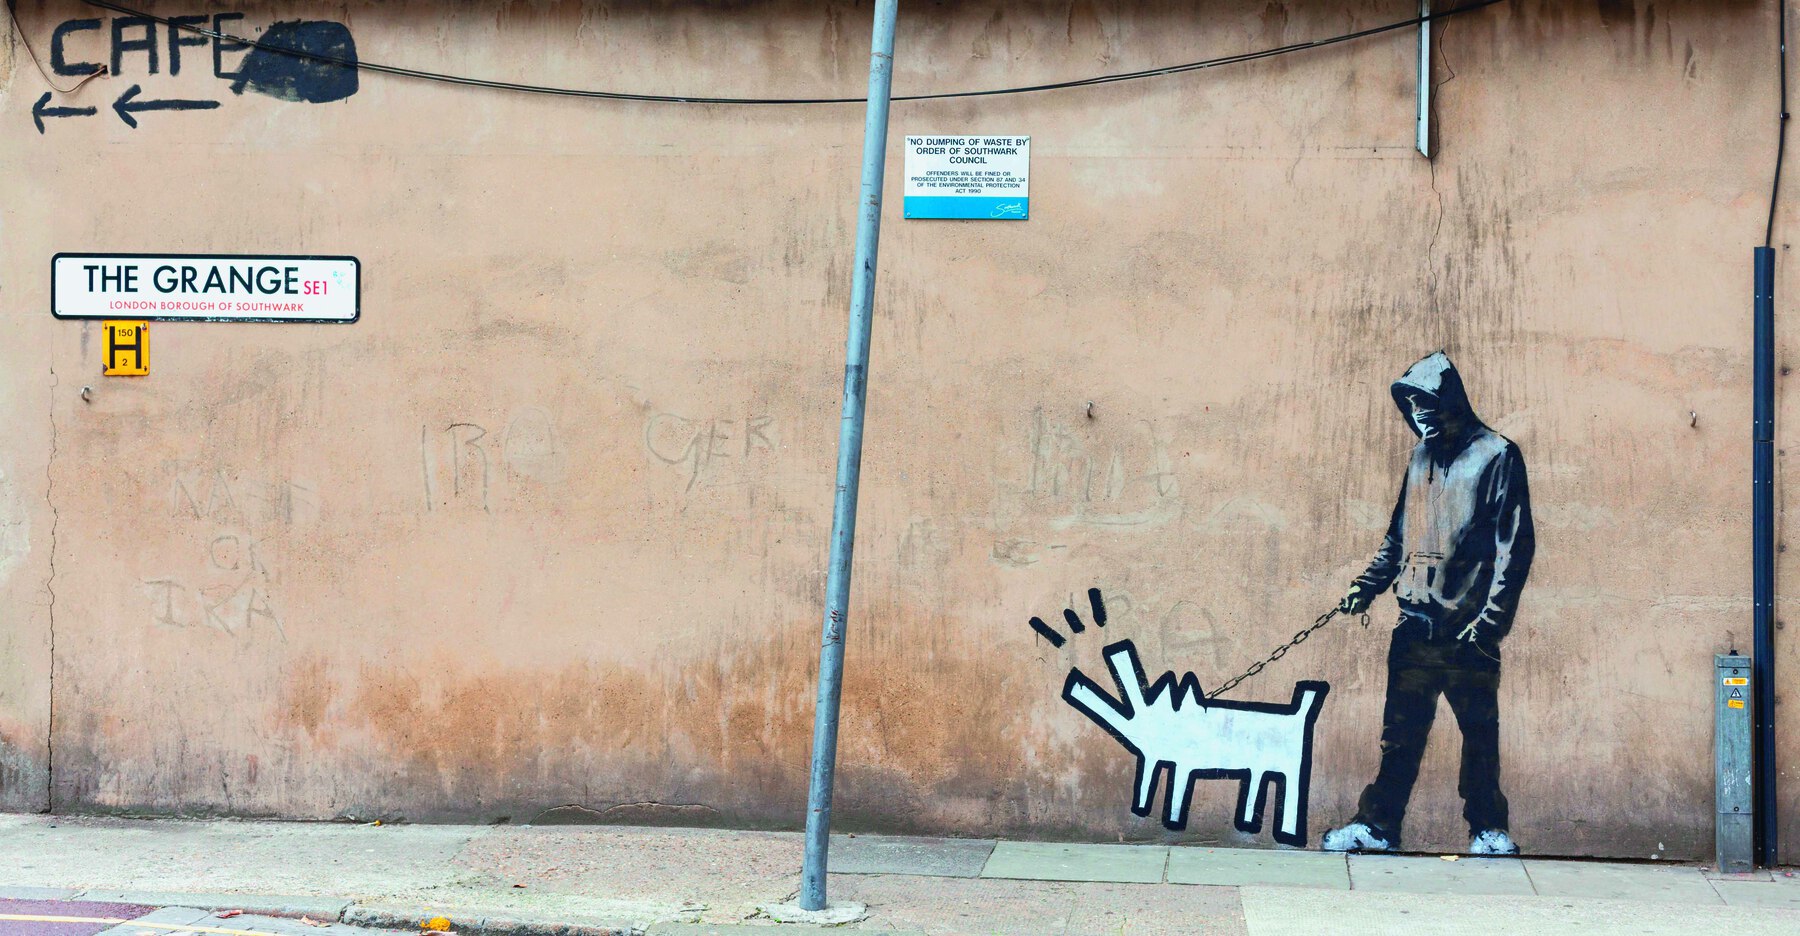 Fotografia. Grafite sobre uma parede: homem com blusa de capuz cinzenta, calça escura e tênis brancos, segura uma corrente que vai até a silhueta de um cachorro, desenhado somente com linhas geométricas.